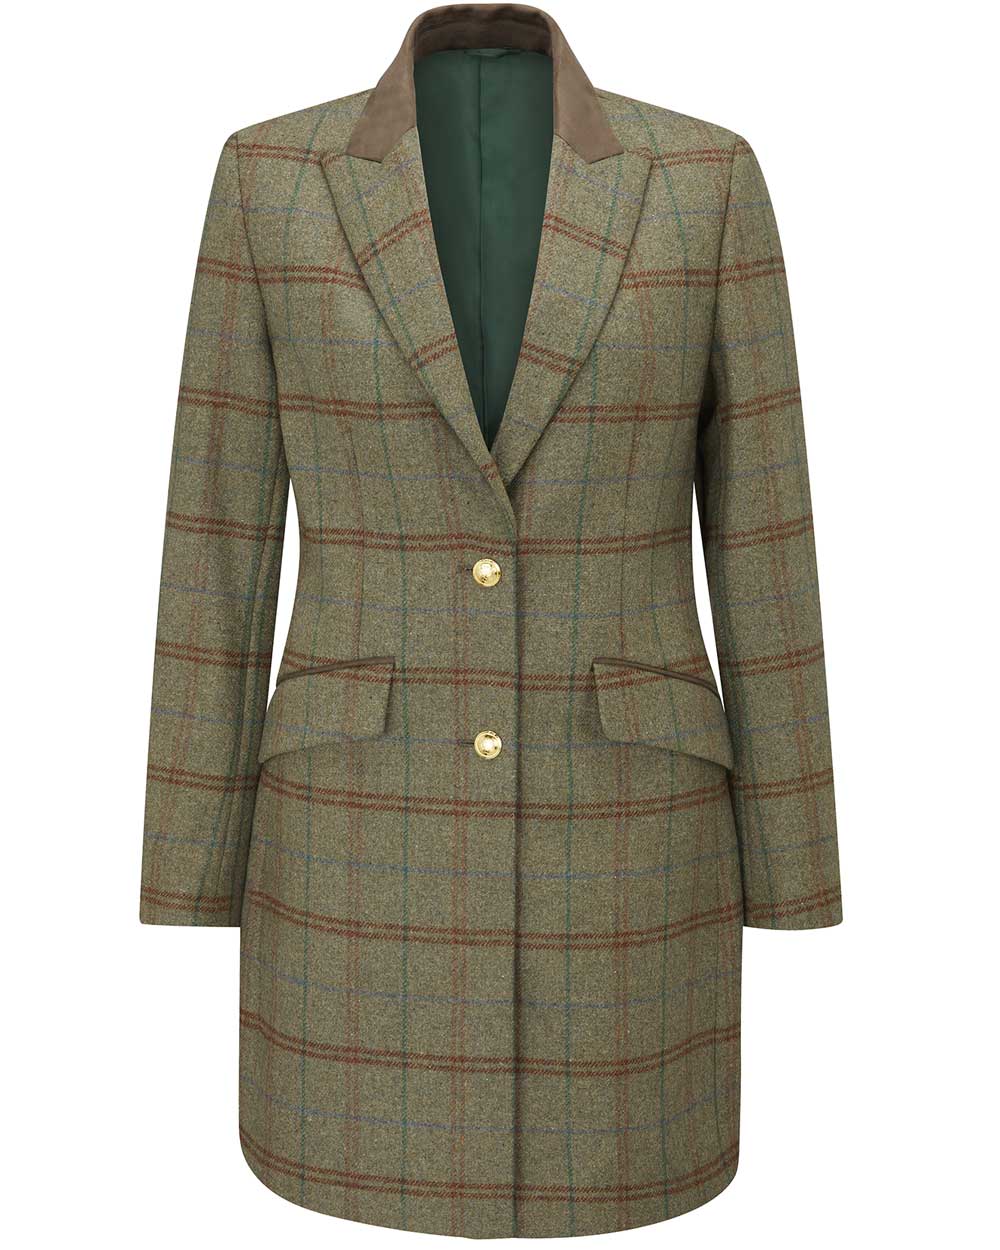 Alan Paine Surrey Mid-Thigh Tweed Coat in Clover 